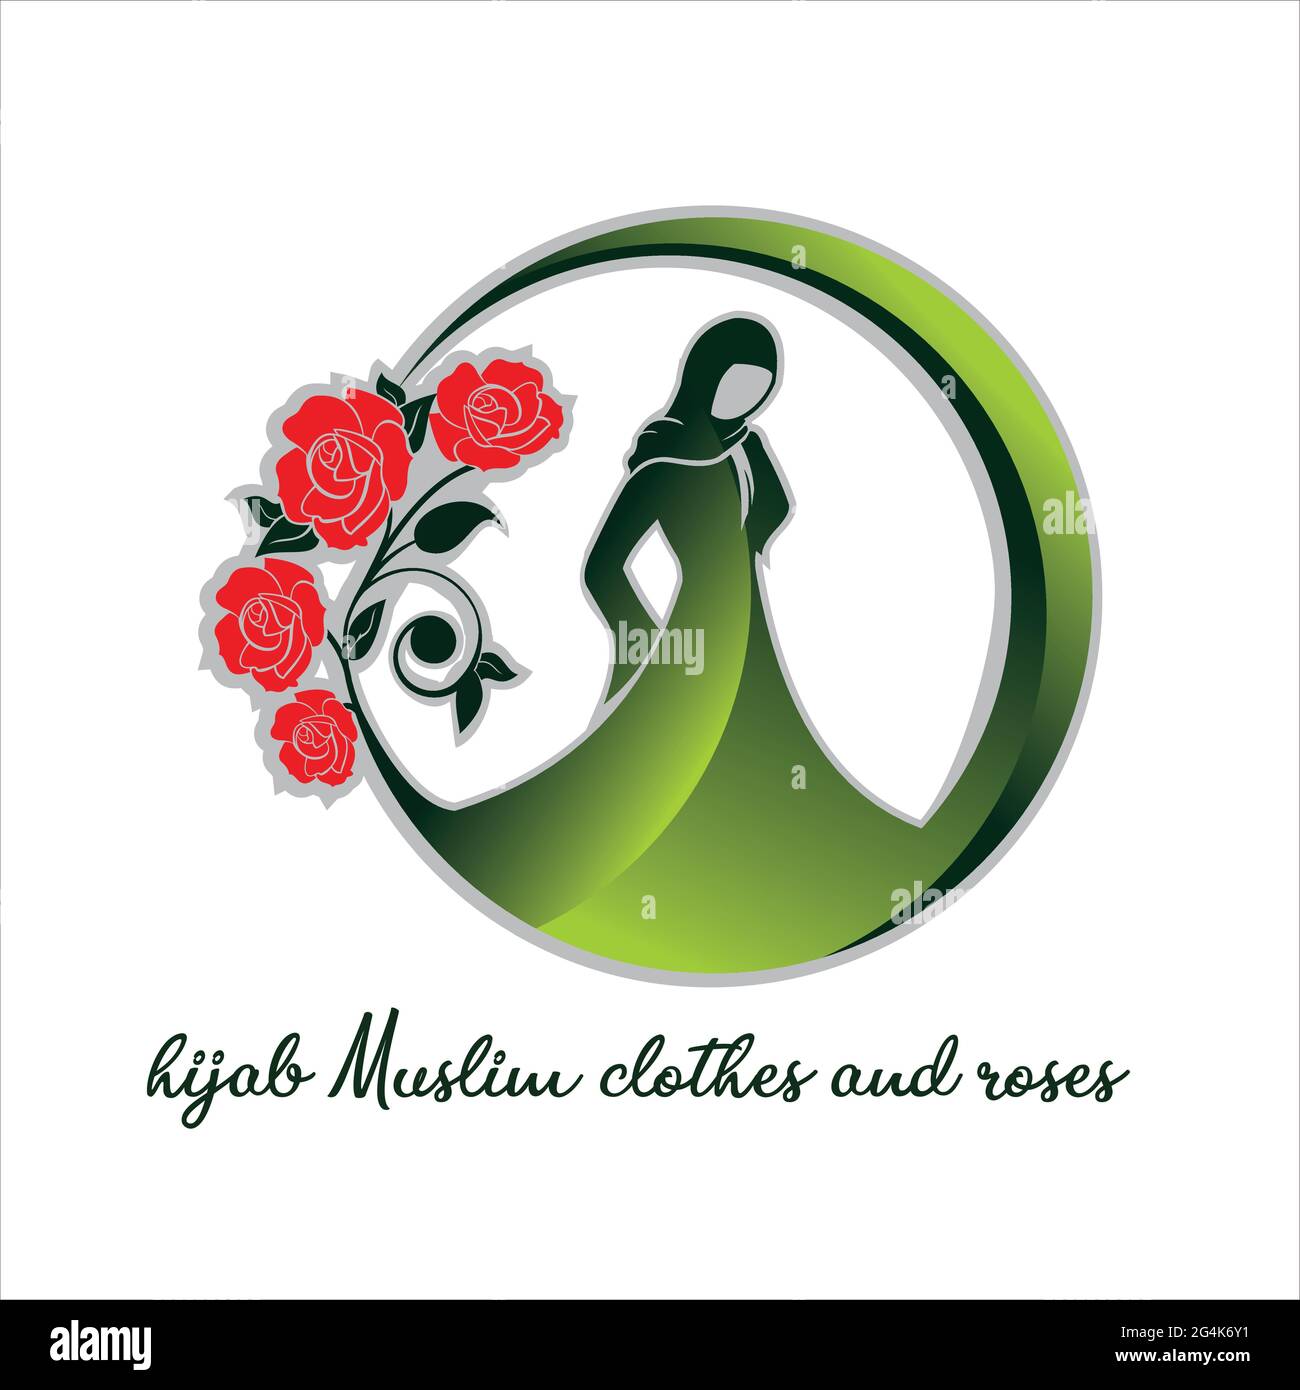 Schleier muslimische Kleidung und Rosen feminine exklusive Logo Design Inspiration Stock Vektor